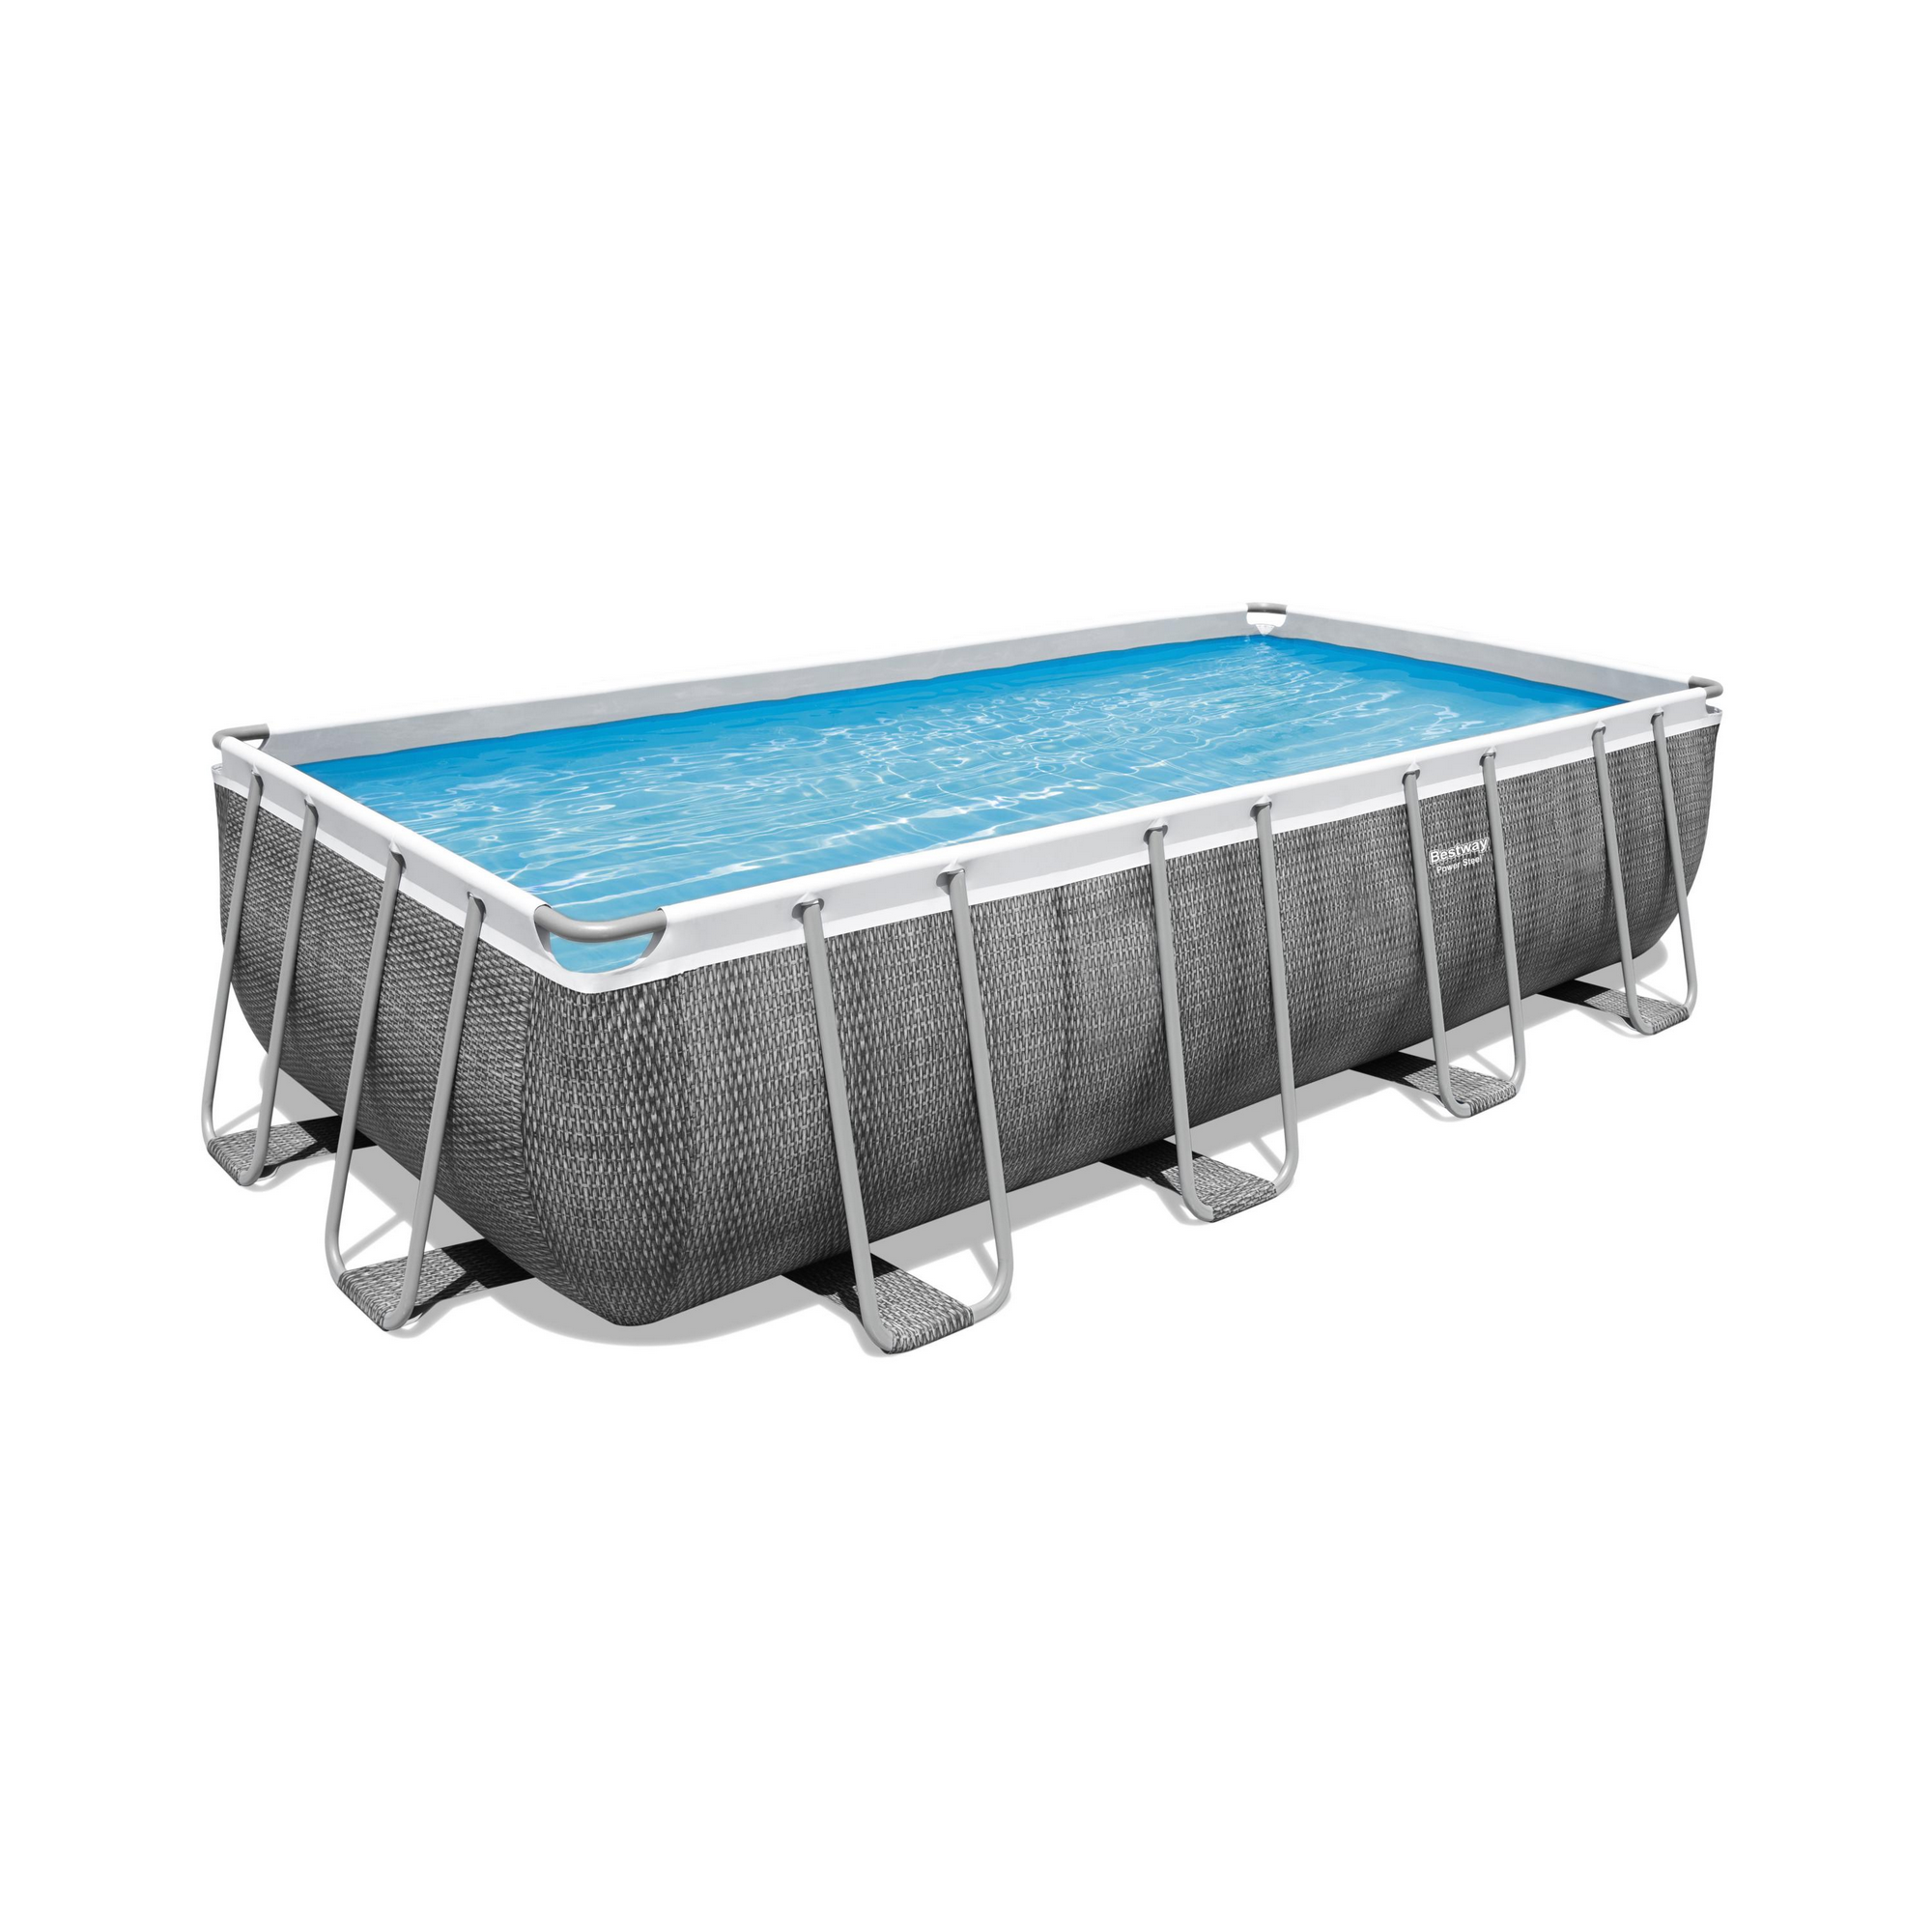 Frame-Pool-Set 'Power Steel' 488 x 244 x 122 cm mit Sicherheitsleiter und Filterpumpe + product picture